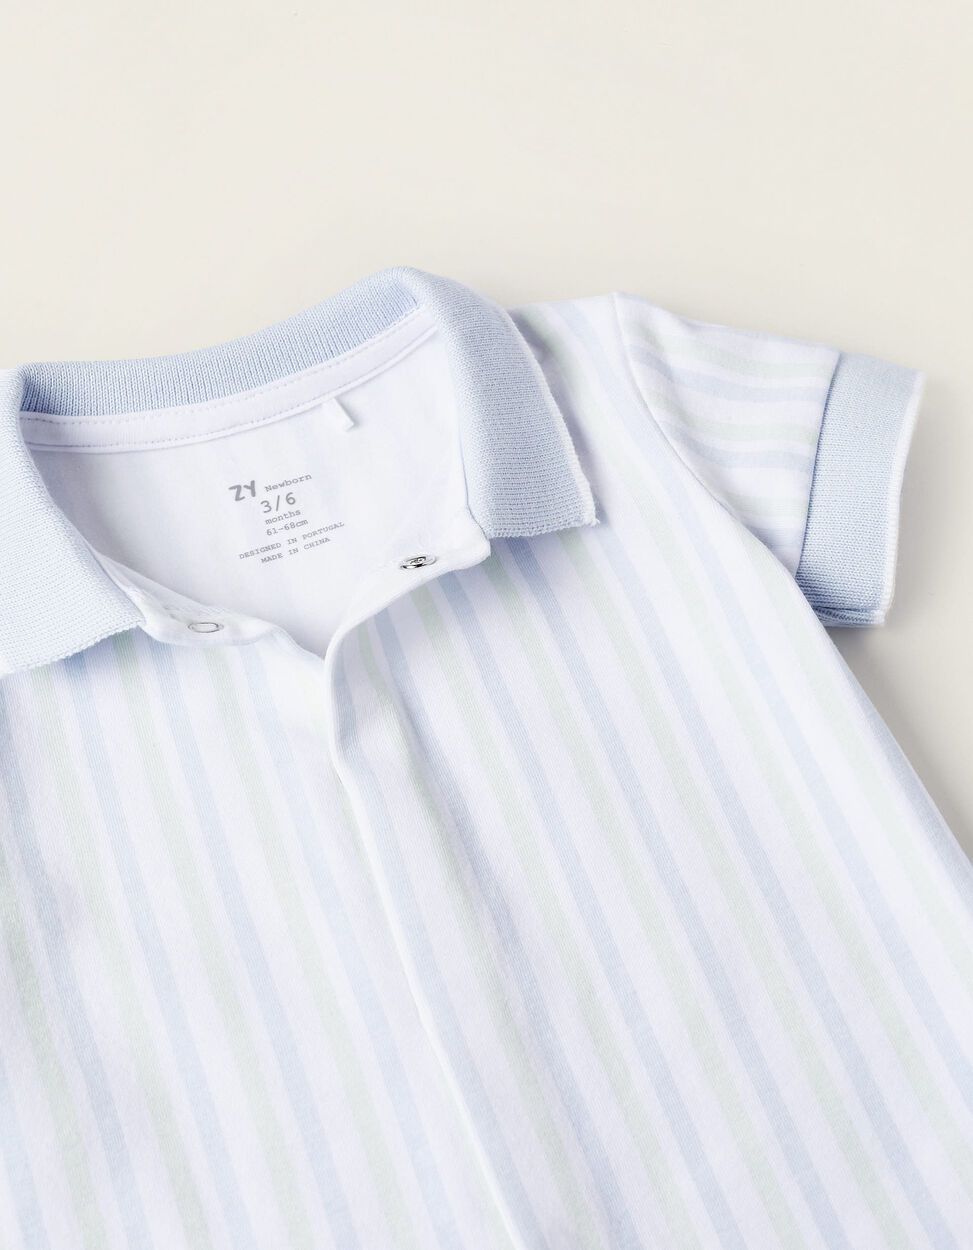 Comprar Online Pijama de 2 Peças em Algodão para Recém-Nascido, Azul/Verde/Branco